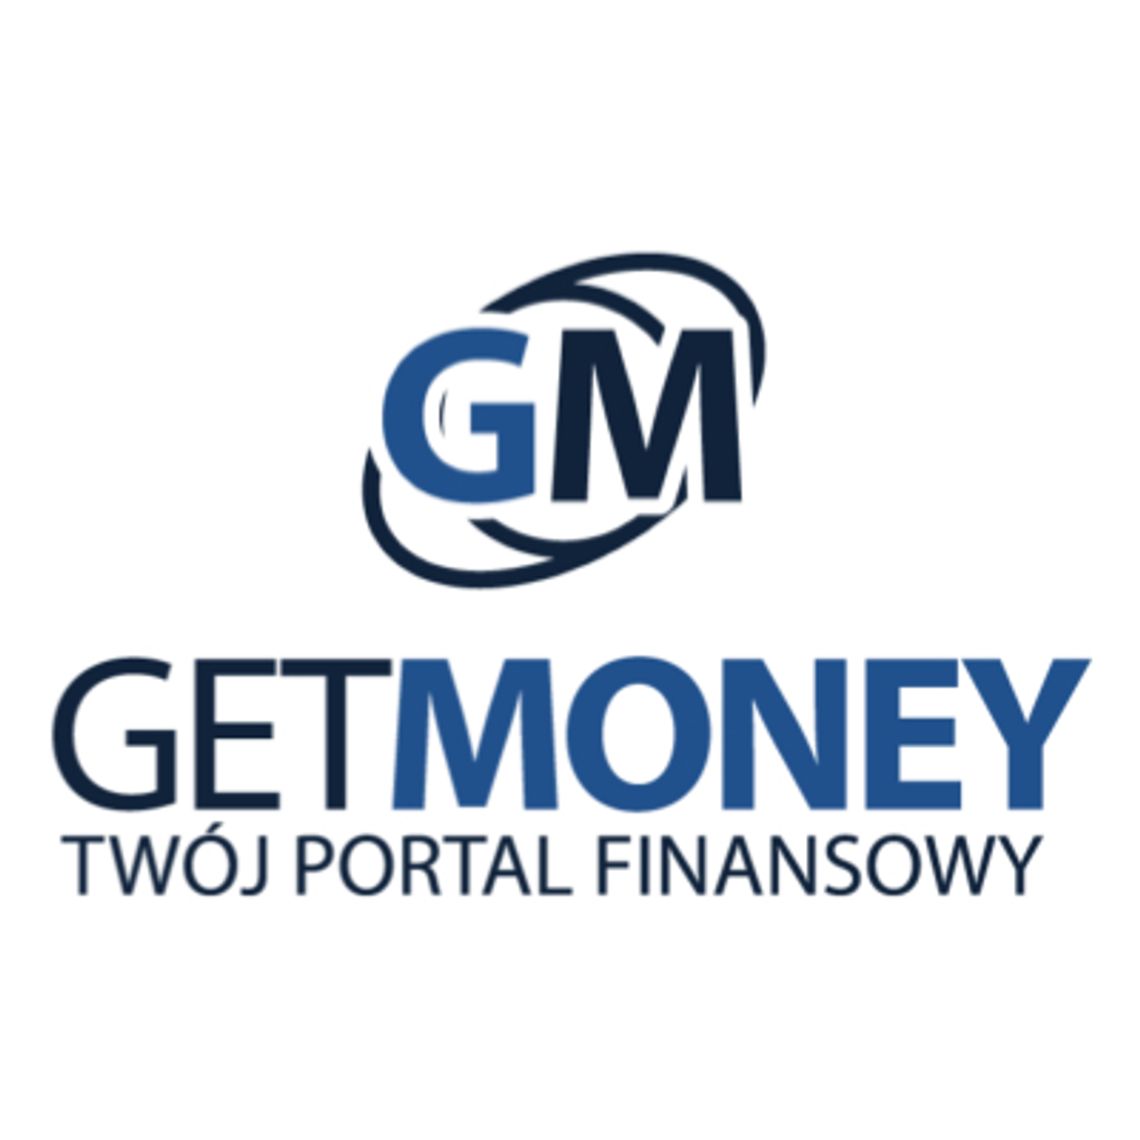 Get Money - pożyczka z dostawą do Klienta